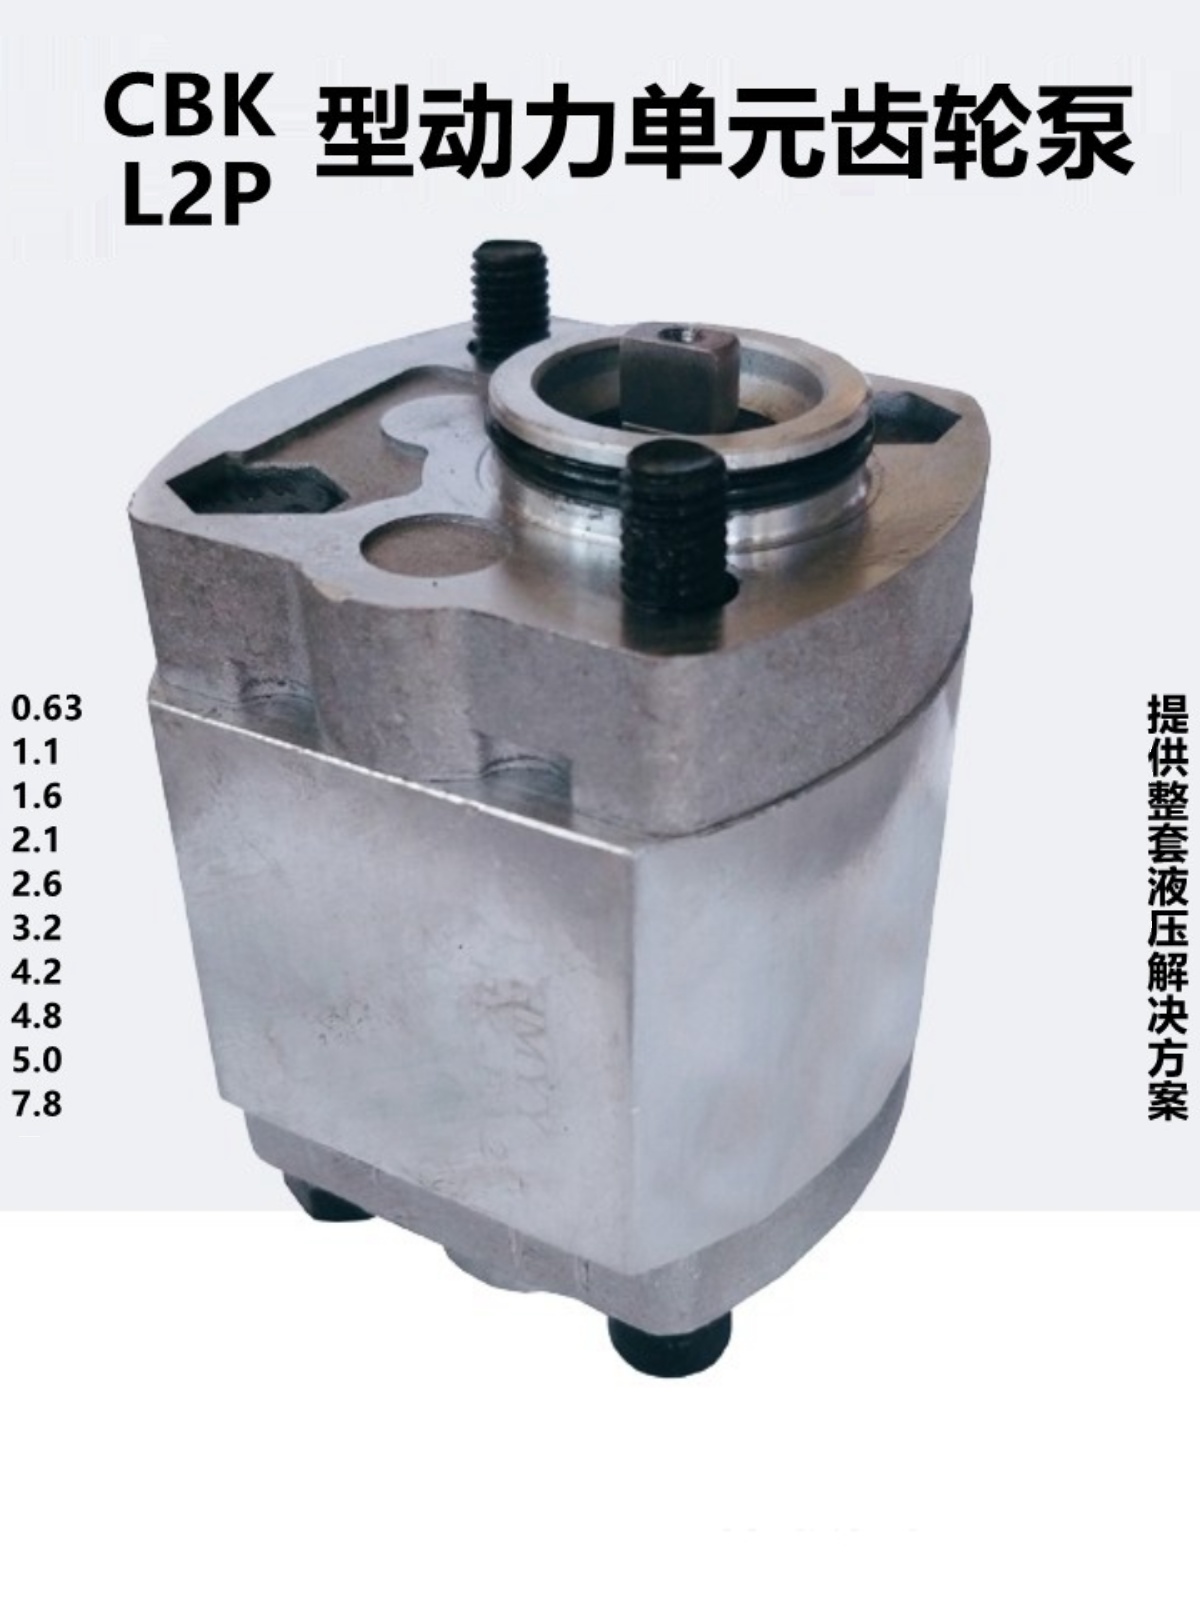 CBK-F4.8 F2.1 F1.1 F2.6 F7.8 F1.6 F4.2 L2P-F5.0 F3.2液压泵-图3